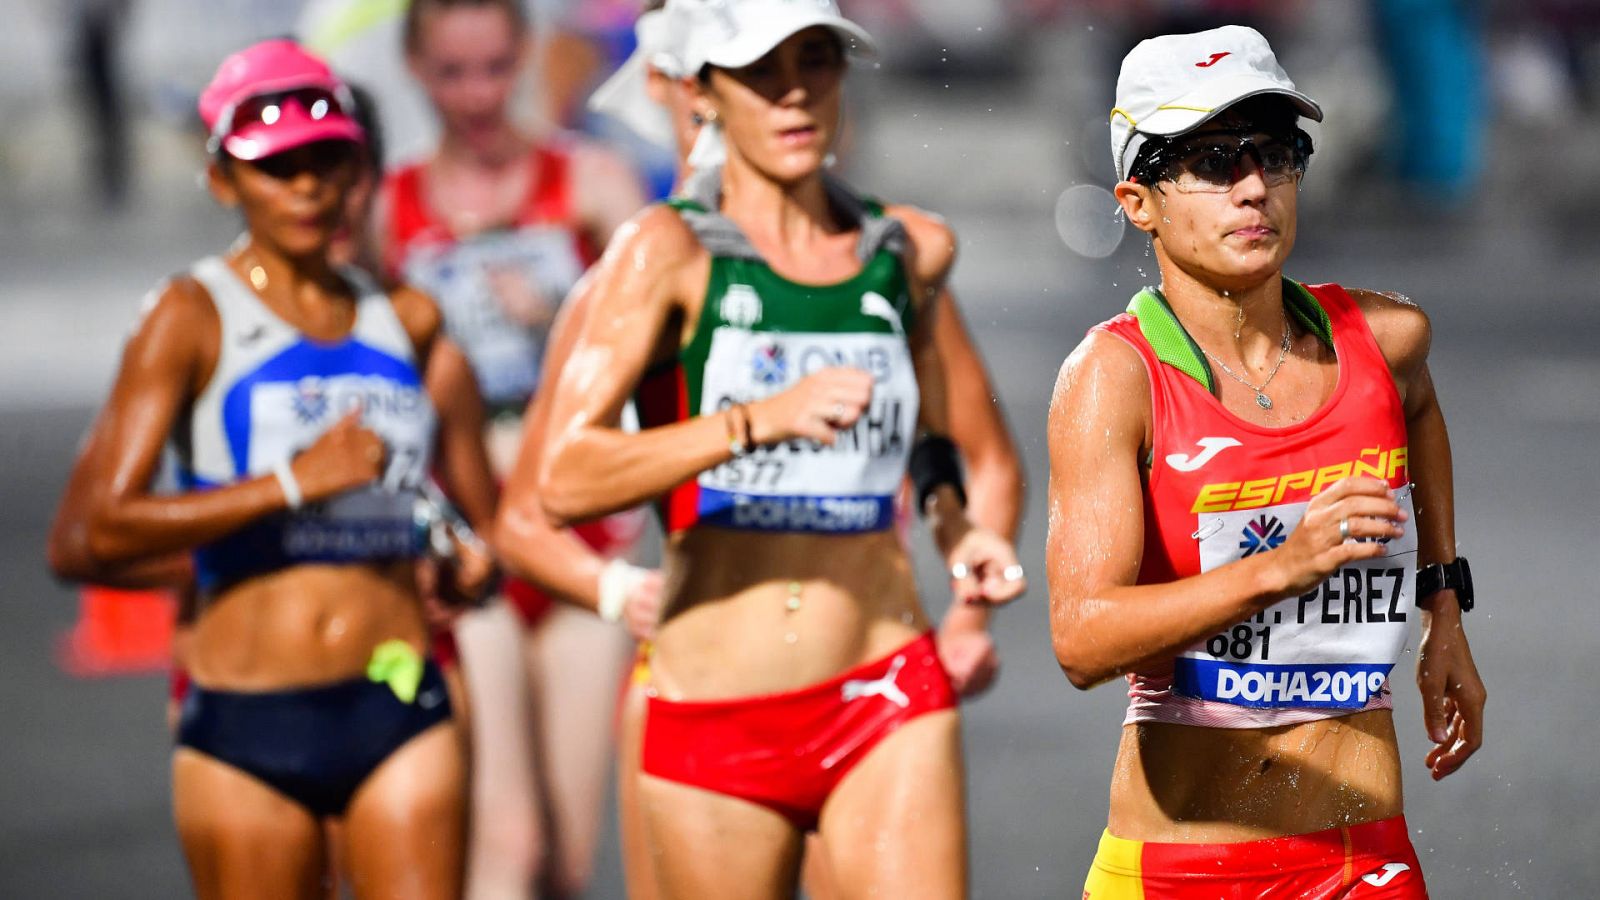 El Mundial de atletismo de Oregón arranca este viernes: atención a la marchadora María Pérez -- Ver ahora